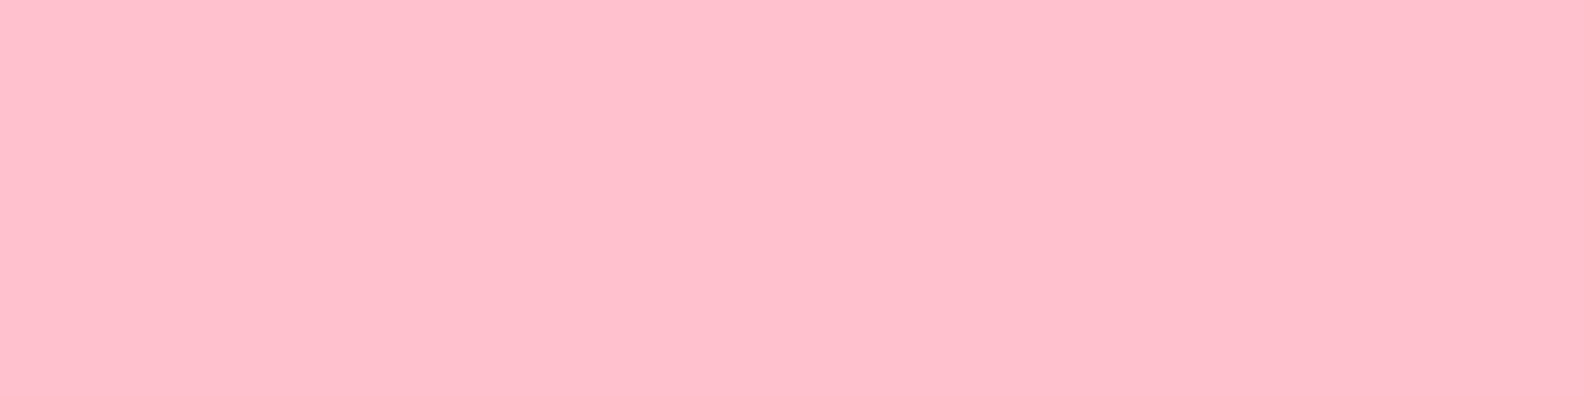 1584x396 Bubble Gum Solid Color Background